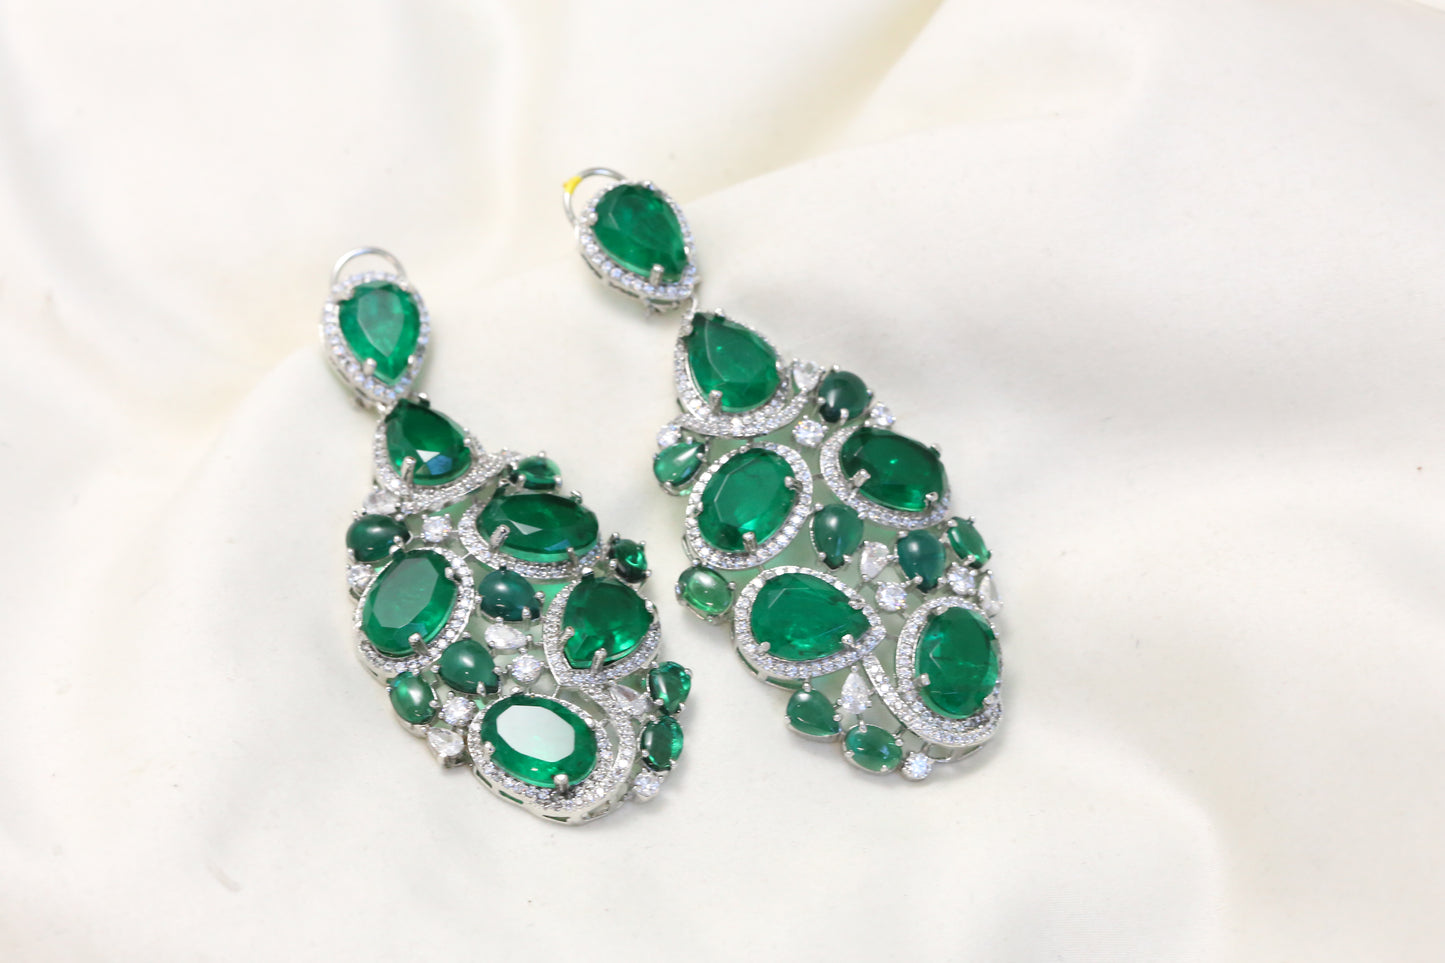 Emerald Green Doublet Earrings